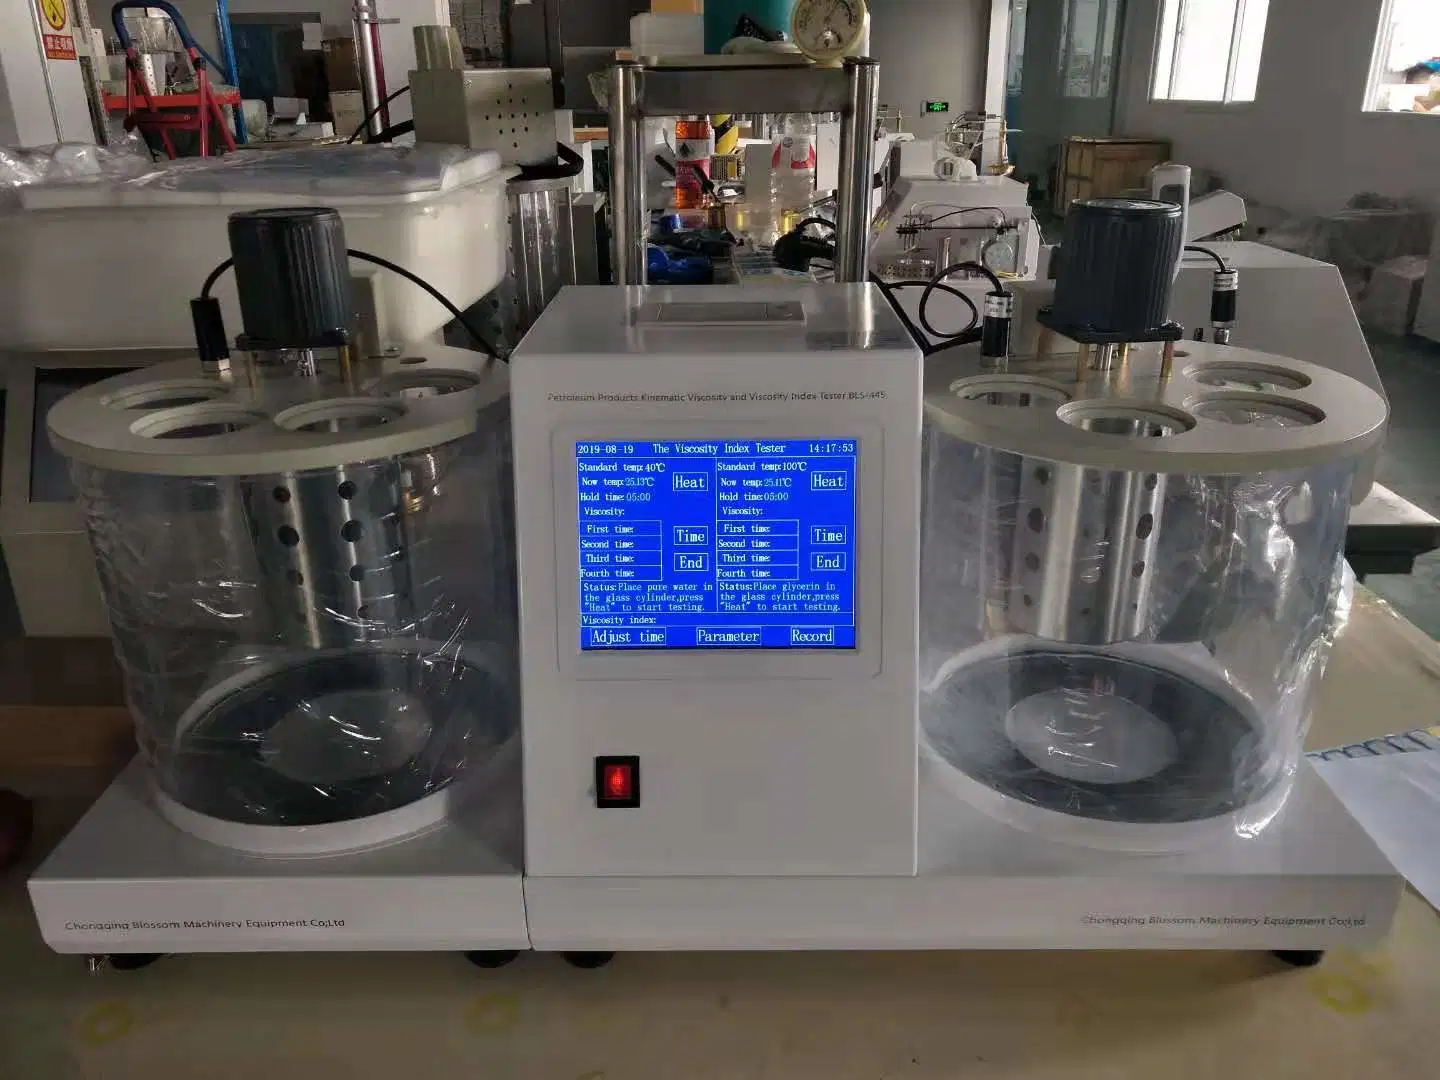 Laboratory ASTM D445 Lubricating Oil Viscosity Meter